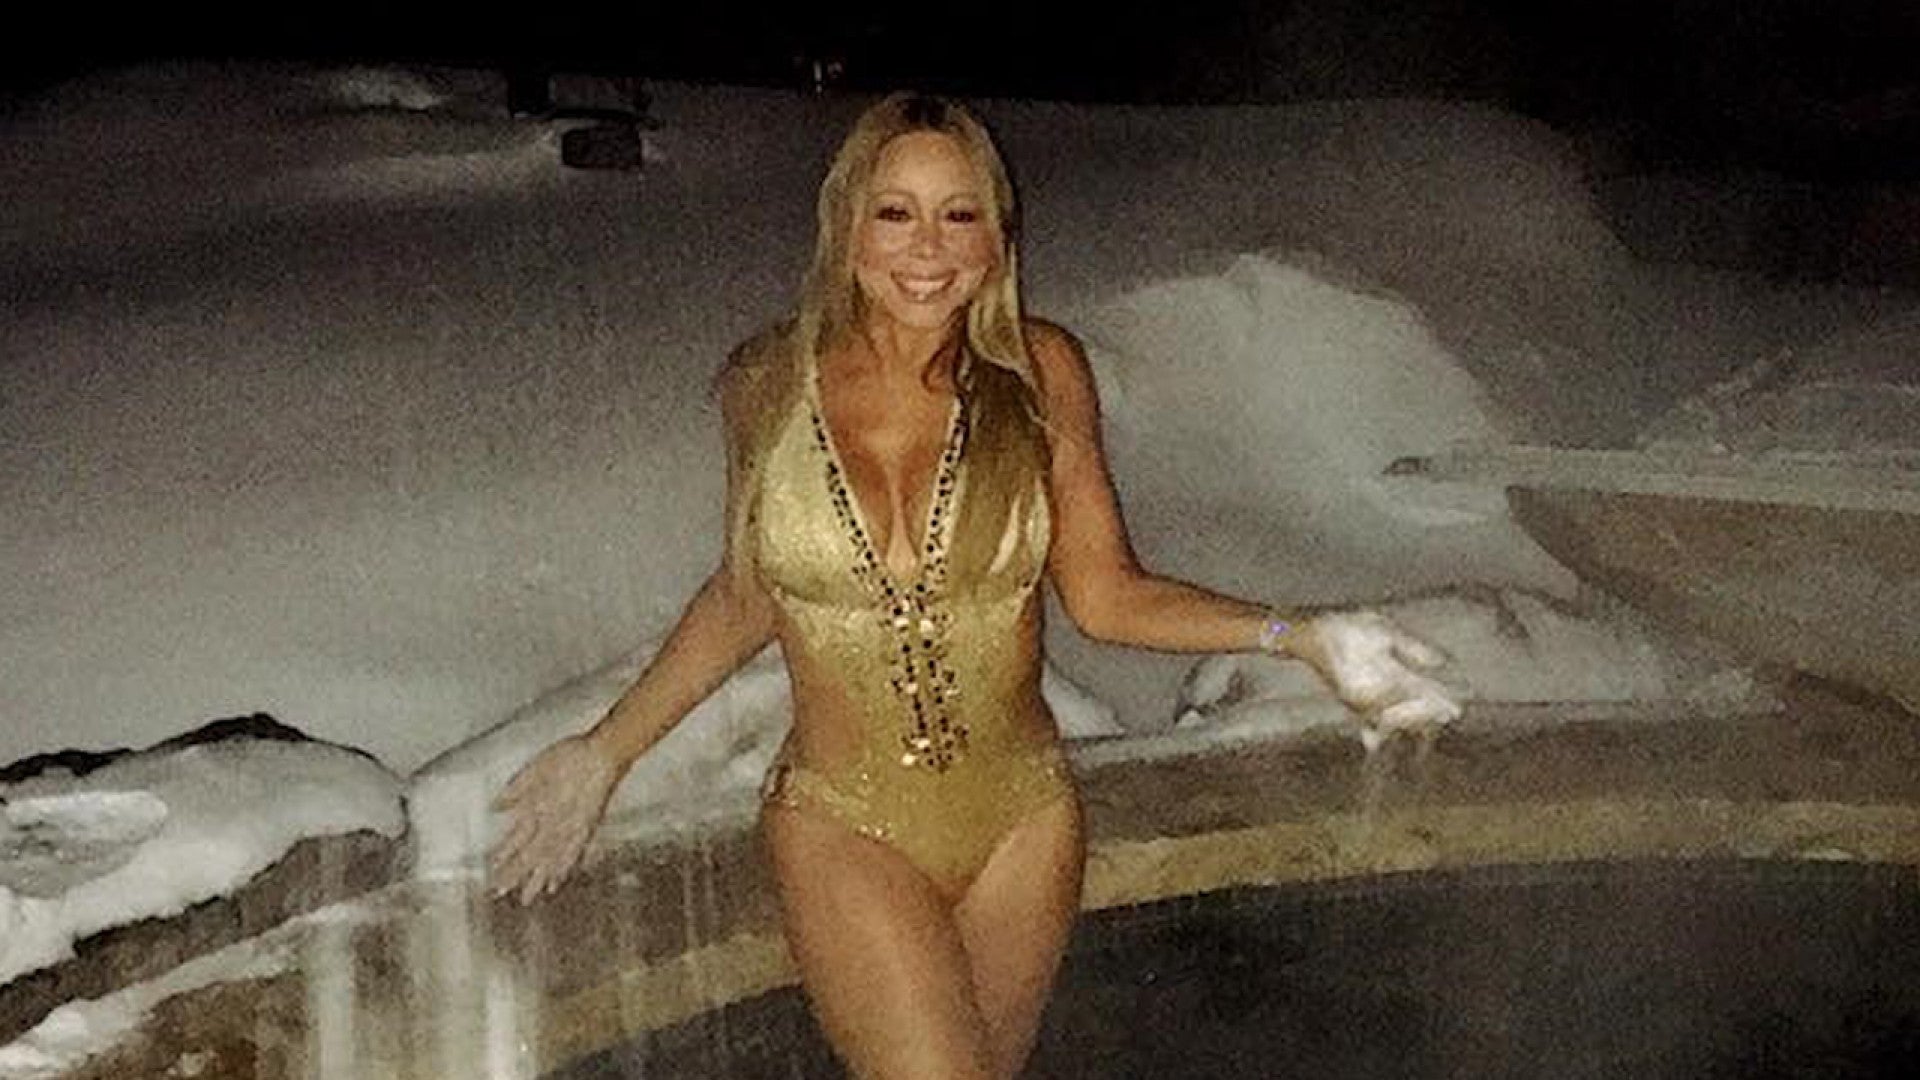 Mariah carey in bathing suit